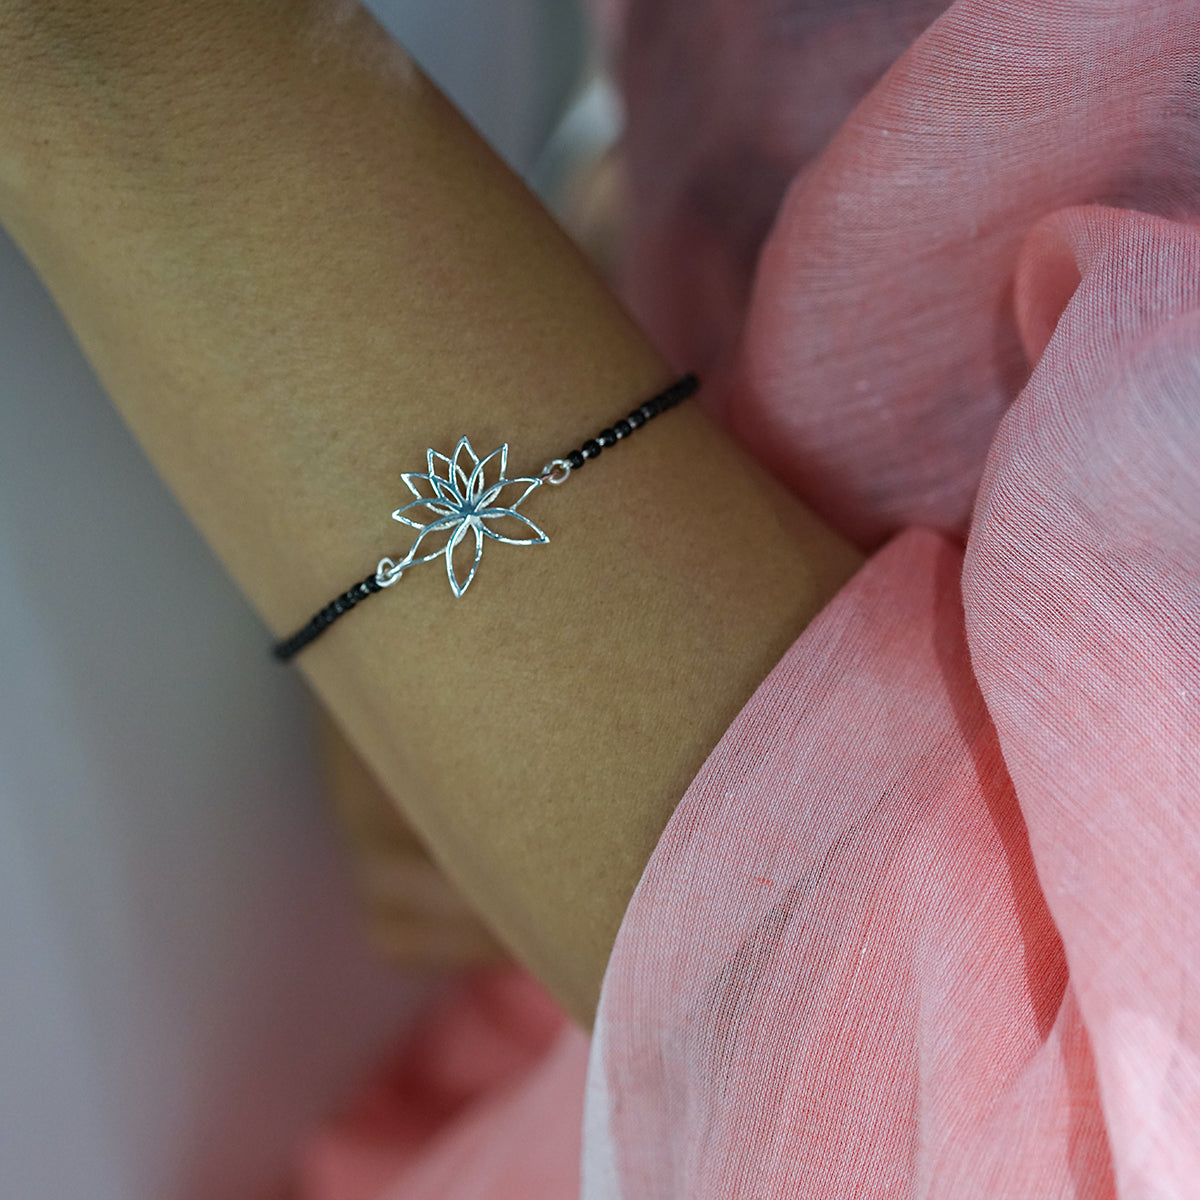 a woman wearing a bracelet with a flower on it